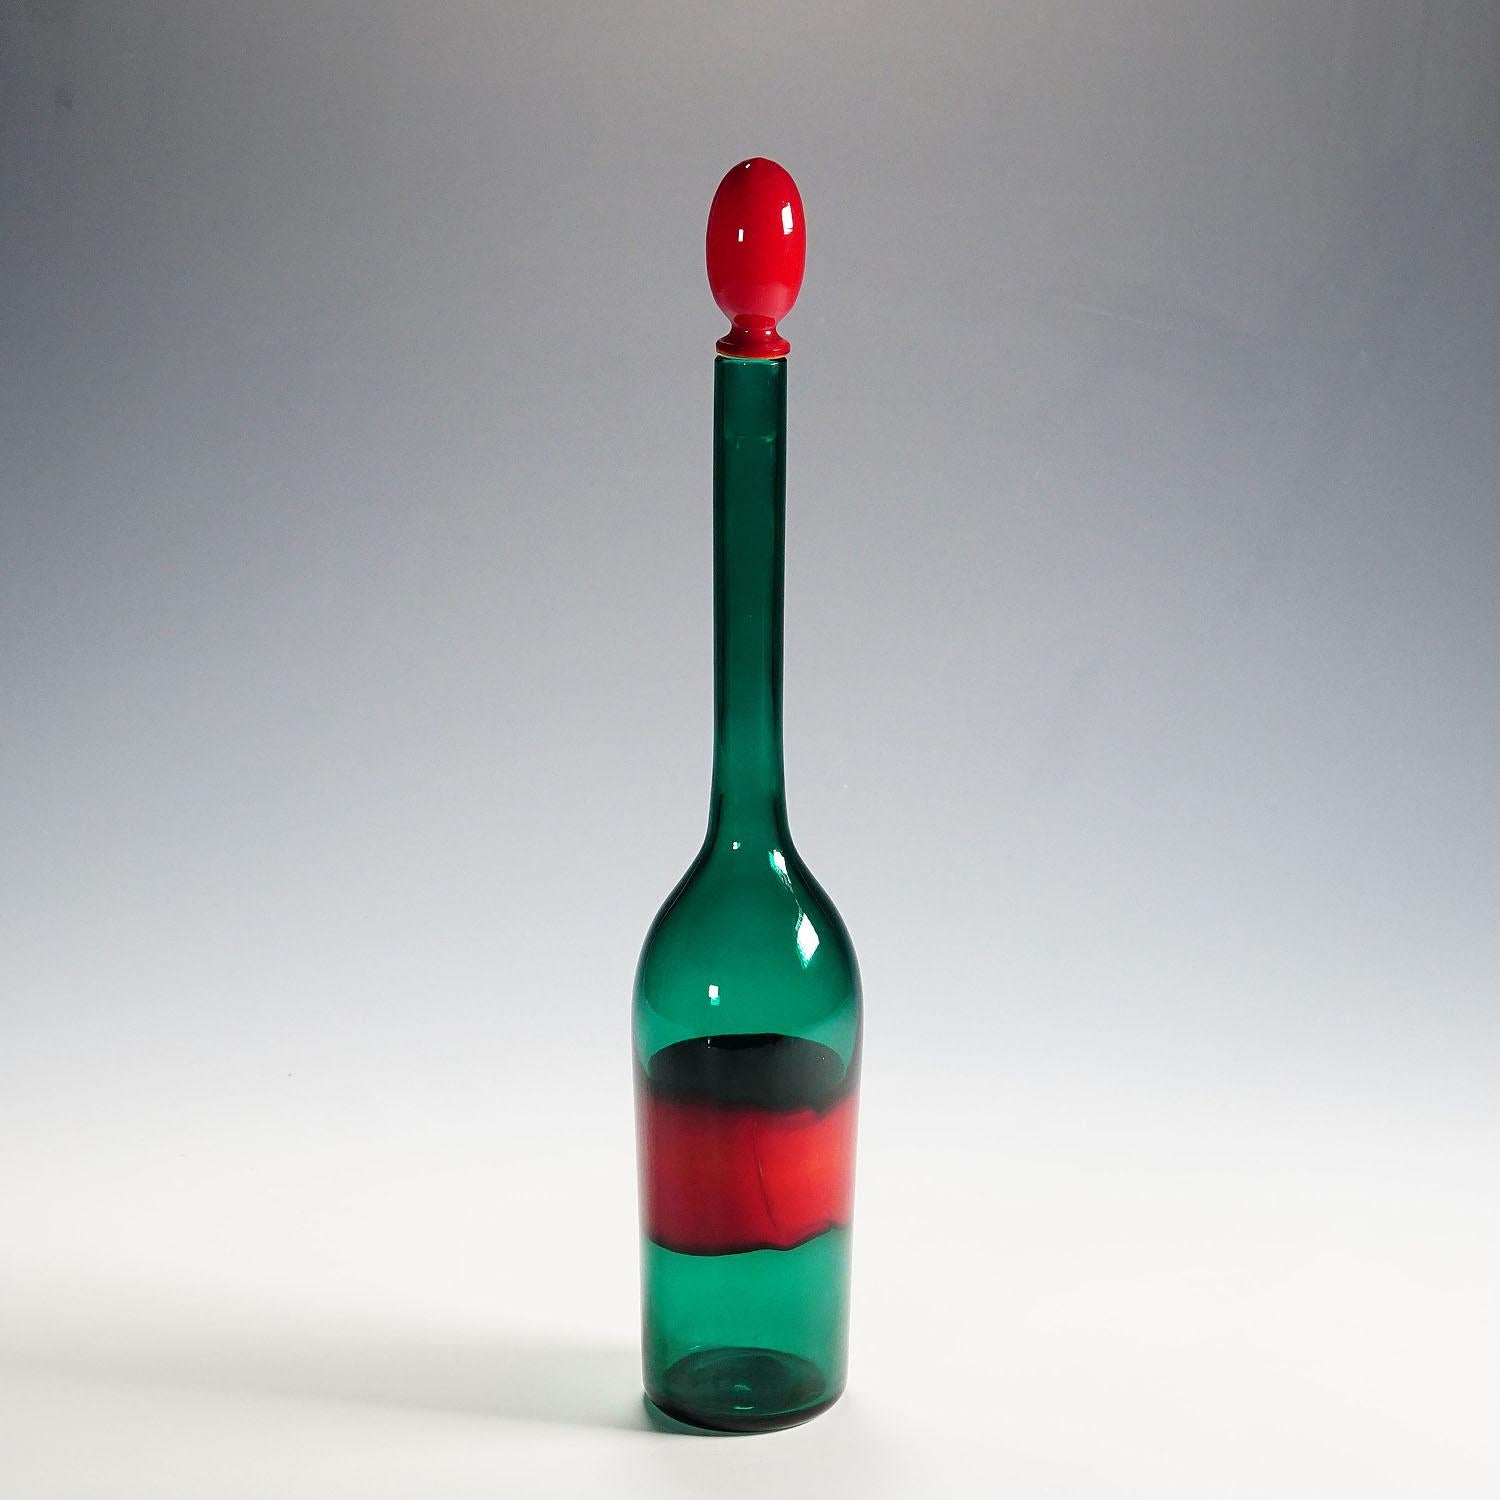 Bouteille en verre d'art Venini avec décoration Fasce, Murano, années 1950

Une grande bouteille en verre vert transparent avec un bouchon rouge et une bande rouge 